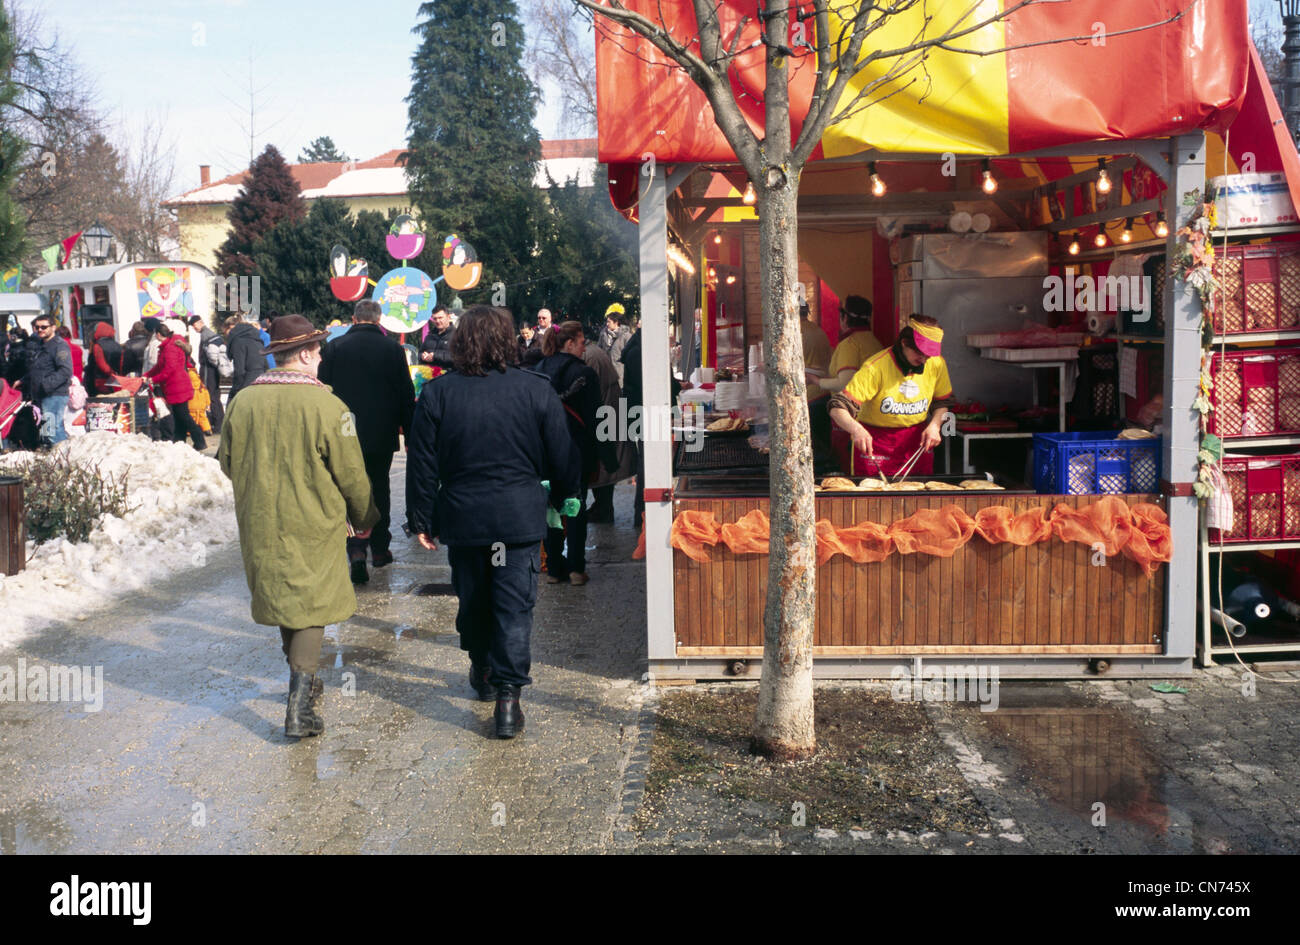 La gente se divierte en tradicionalmente el carnaval en la ciudad croata de Samobor Croacia Europa Foto de stock